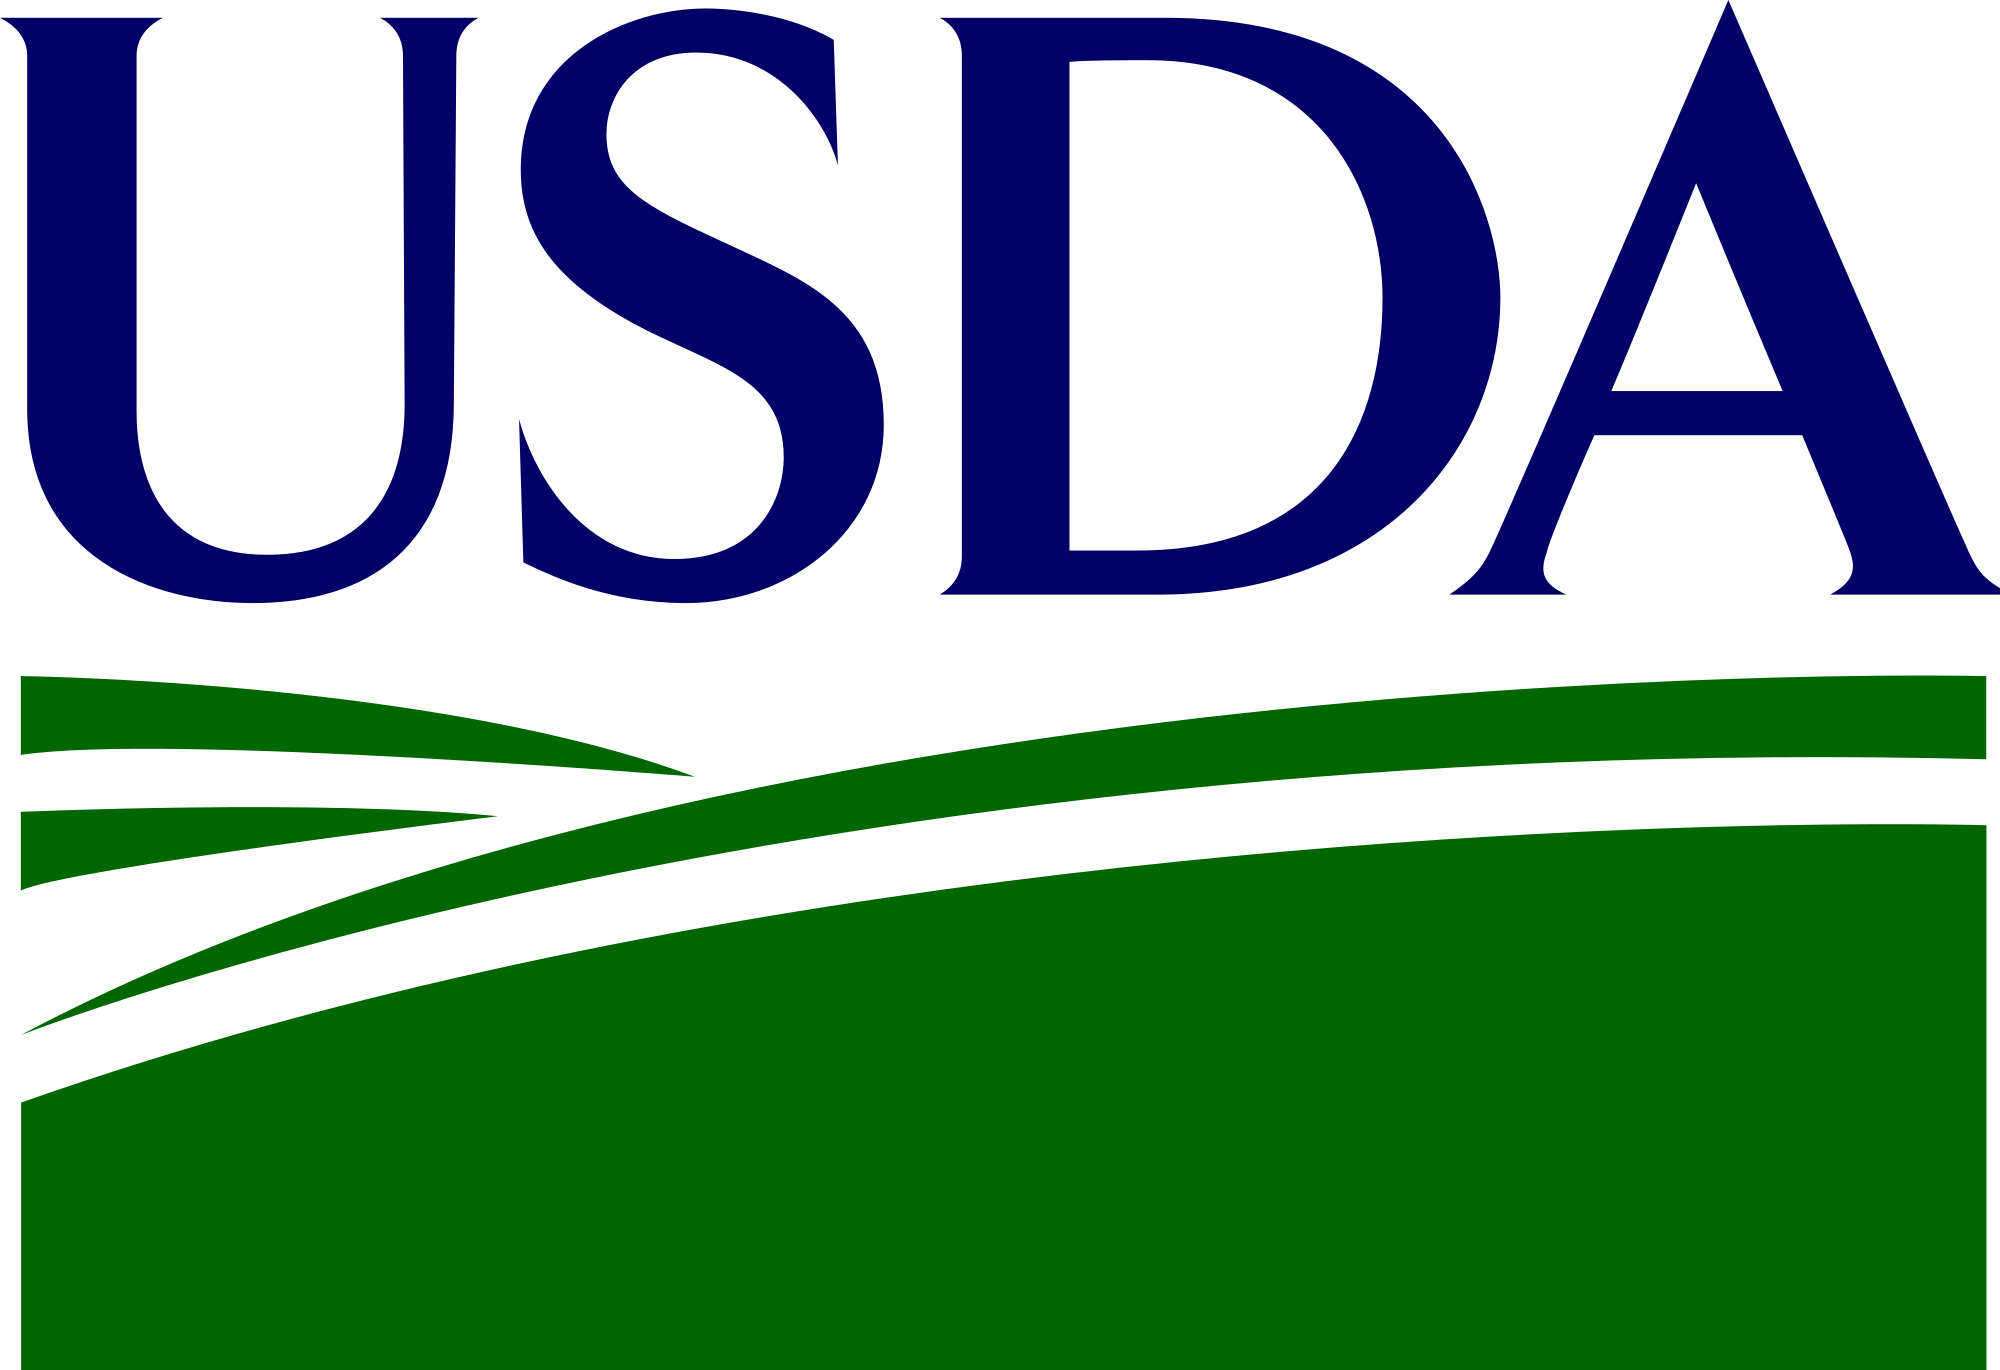 USDA logo.svg